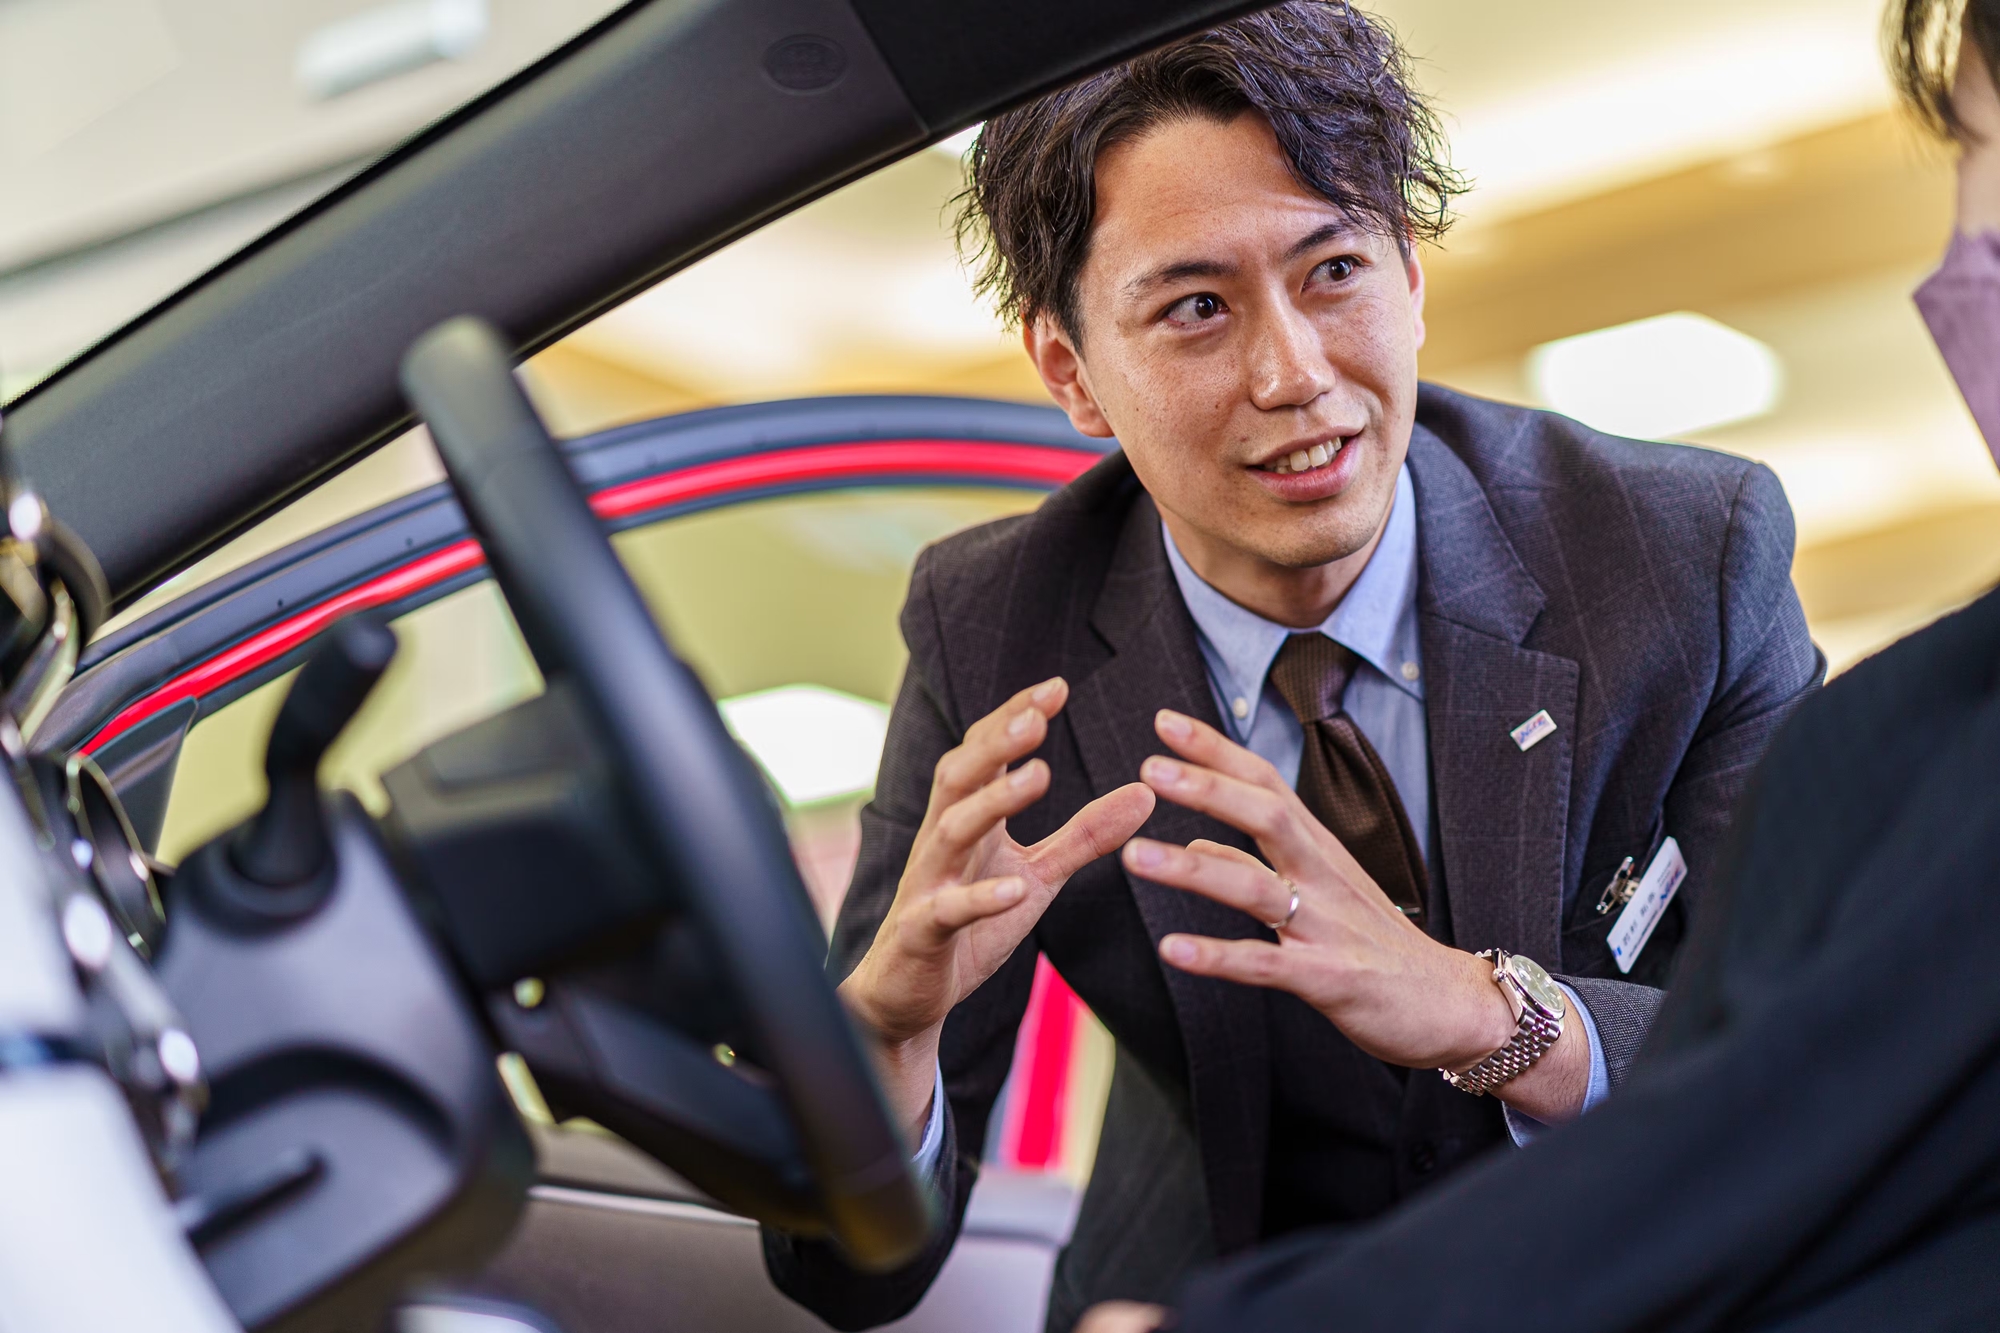 Chuyện kể của một sales Toyota: 'Không chèo kéo khách nhưng luôn là người bán hàng giỏi nhất' - Ảnh 2.